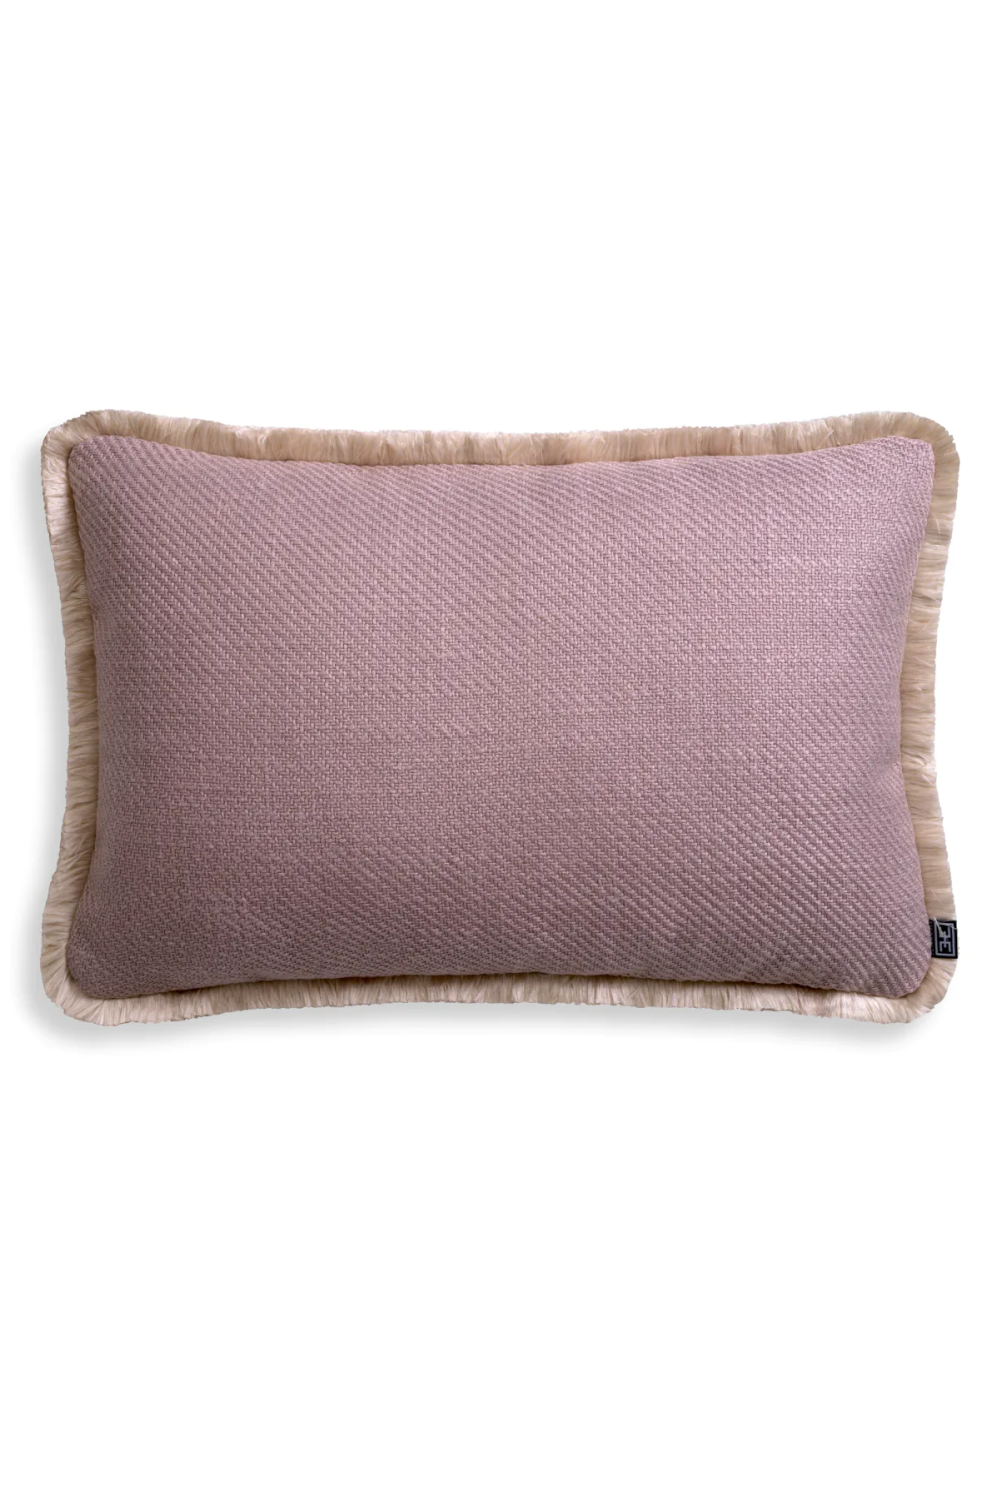 Fringed Modern Lumbar Pillow | Eichholtz Cancan | Oroa.com